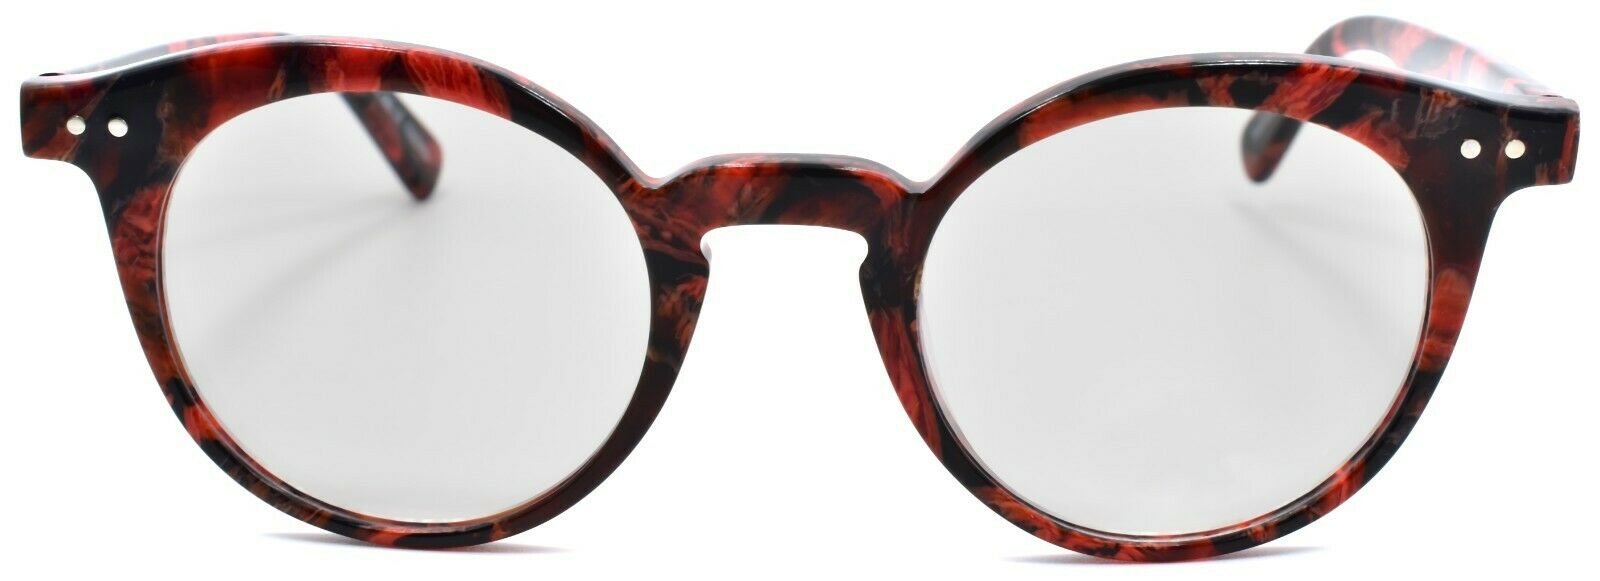 2-Eyebobs Reva 2747 01 Women's Reading Glasses Red Black Marble +1.25-842754161022-IKSpecs